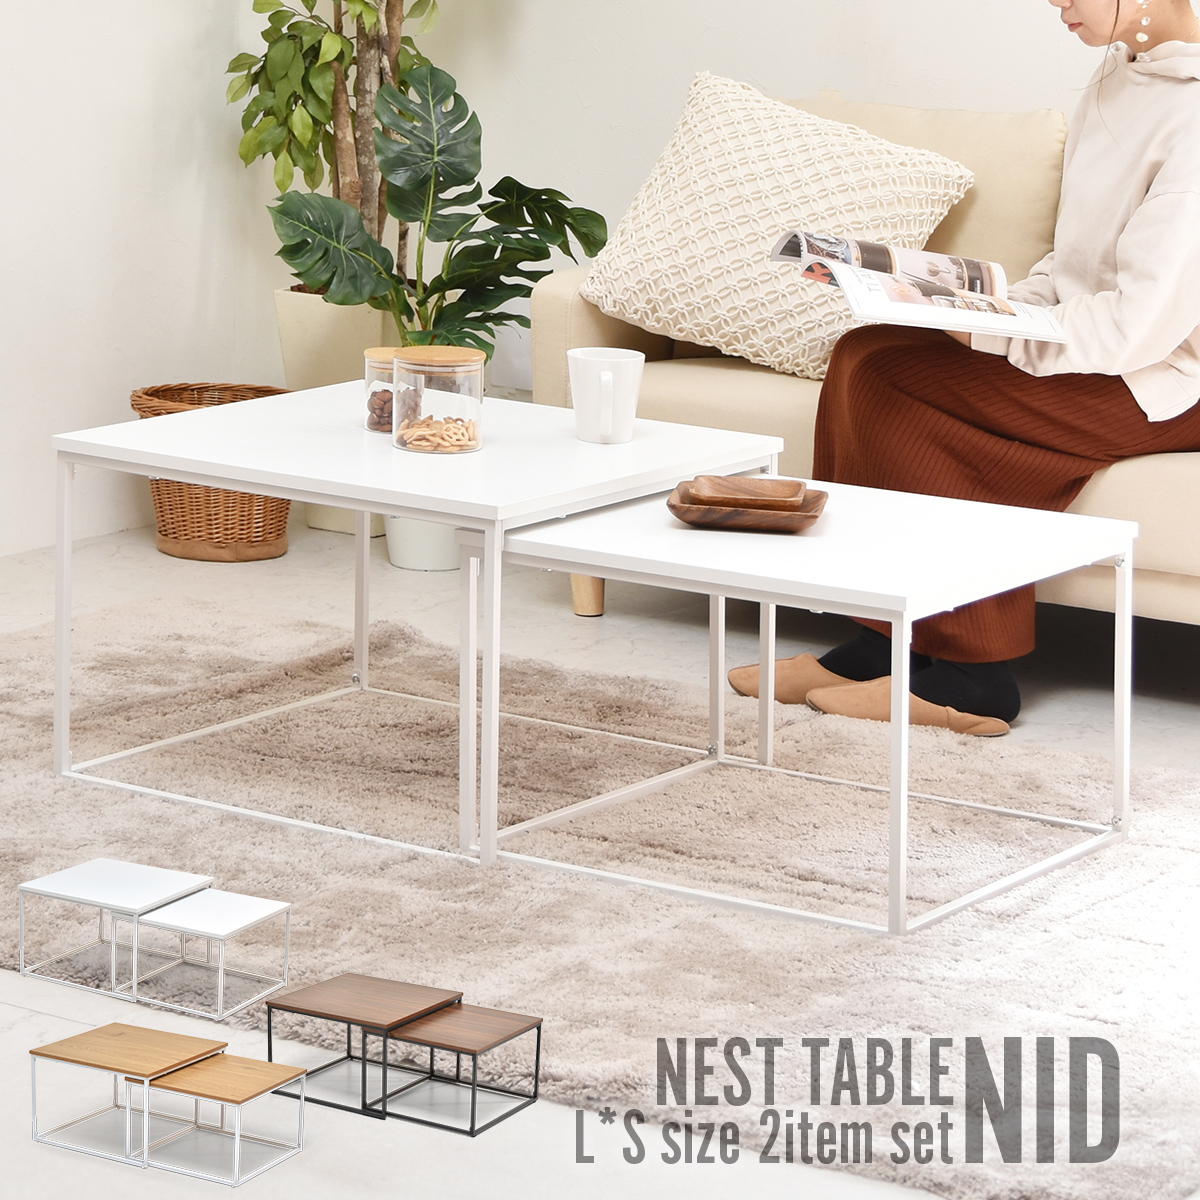 商品について： 大小それぞれ分かれたテーブルが、使い勝手が良く、フレキシブルに使えるネストテーブル。大小のテーブルをうまくおしゃれに並べてリビングのセンターテーブルとして、重ねてソファ横の大きめのサイドテーブルや、大小を別々に使って自由にアレンジができます。洗練されたシンプルなデザインとカラーバリエーションで、お部屋のムードをがらっと変えるアイテムです。 商品サイズ：大：W595×D595×H396mm 小：W535×D535×H356mm 素　　　材：【天板】中質繊維板にメラミン貼り　【脚】スチールパイプ(粉体塗装) 重　　　量：9.9kg 耐　荷　重：天板（大）：約25kg　天板（小）：約25kg 形　　　状：要組立品 (組立時間約30分/1人) ※商品写真の色味は、ご使用の端末の設定等により実際のものと異なってしまう場合があります。予めご了承の程、お願い申し上げます。